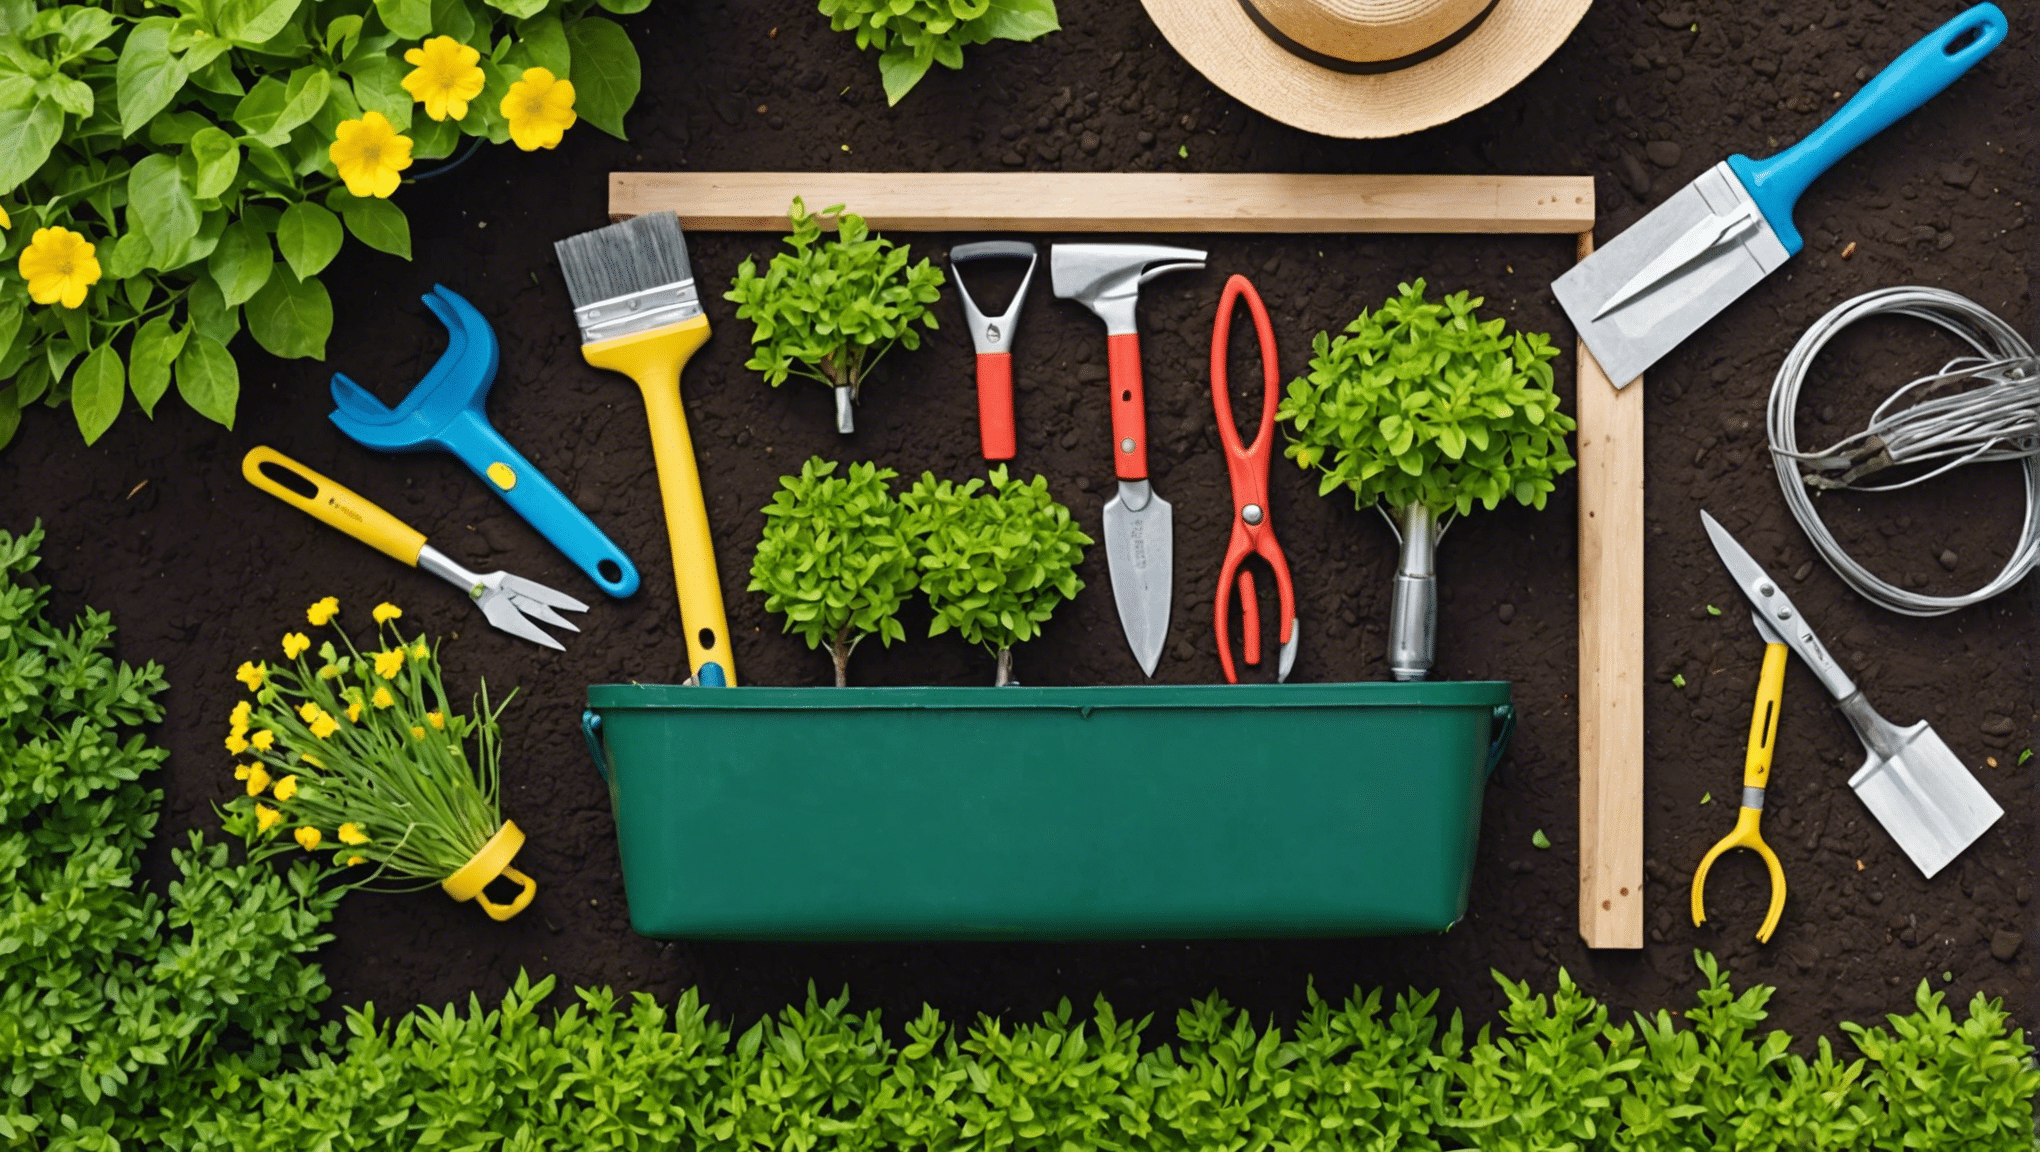 Entdecken Sie die unverzichtbaren Gegenstände, die Sie in Ihre Gartenwerkzeugtasche packen sollten, und machen Sie Ihre Gartenarbeit angenehmer und effizienter. Von der Gartenschere bis zu Handschuhen: Finden Sie heraus, was Sie für eine erfolgreiche Gartenarbeit brauchen.